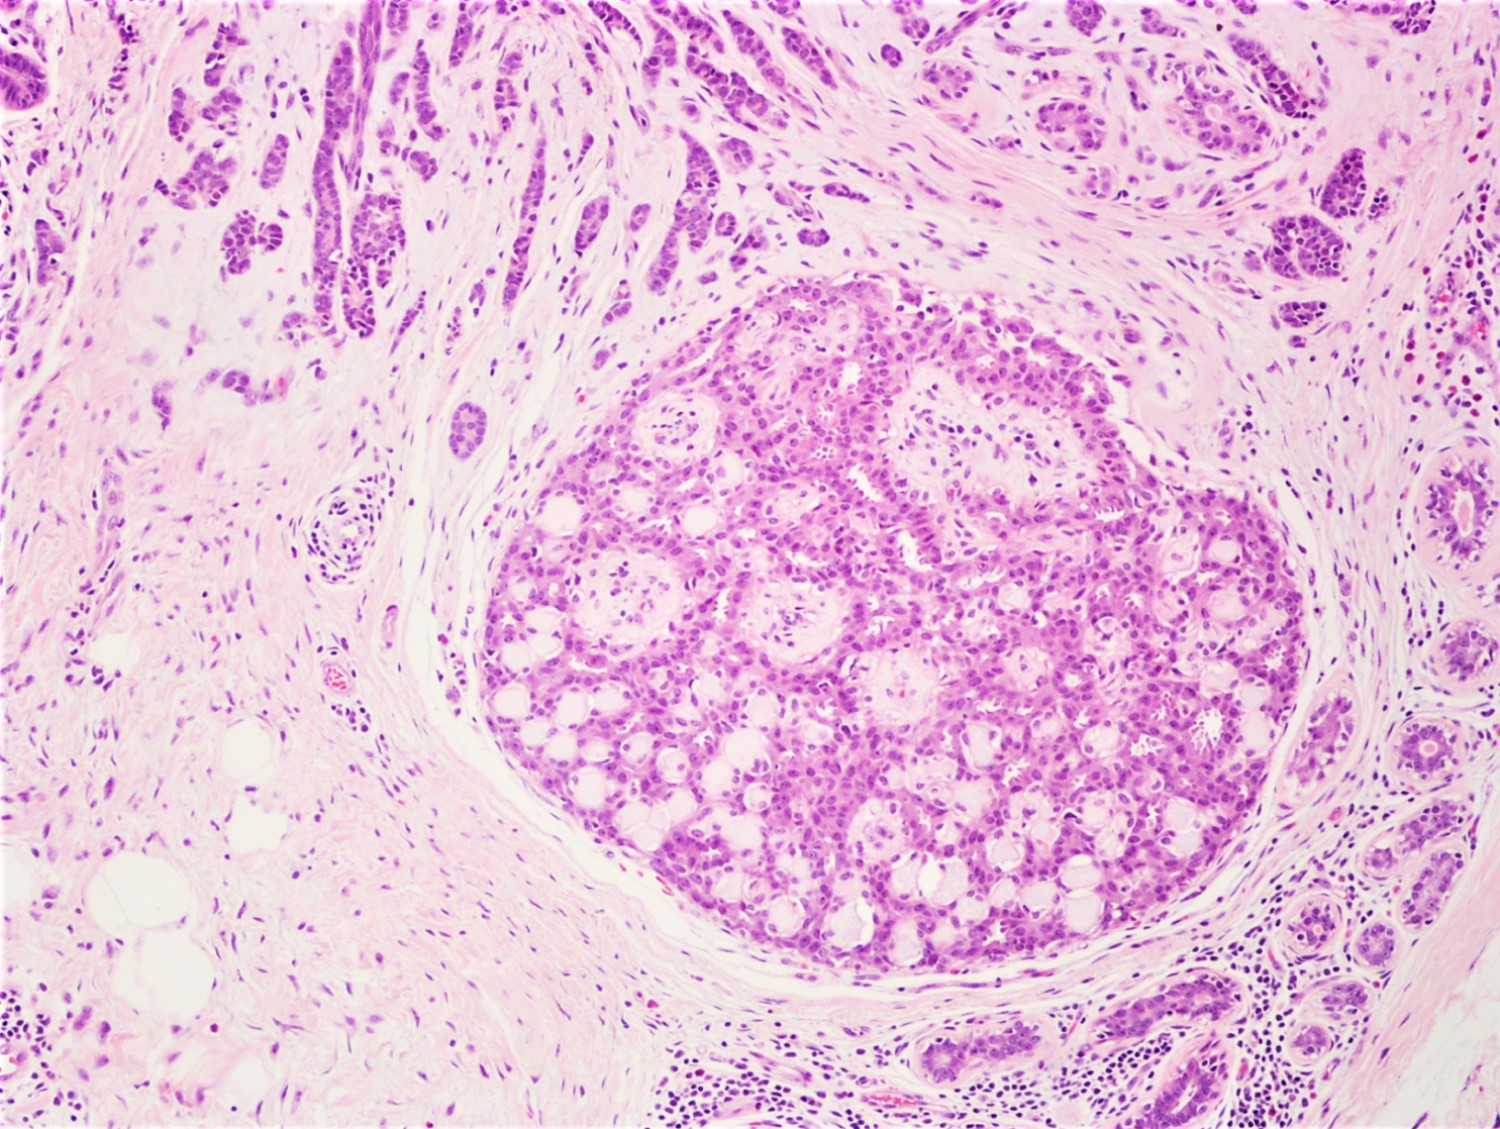 papilláris urothelialis hyperplasia szövettan